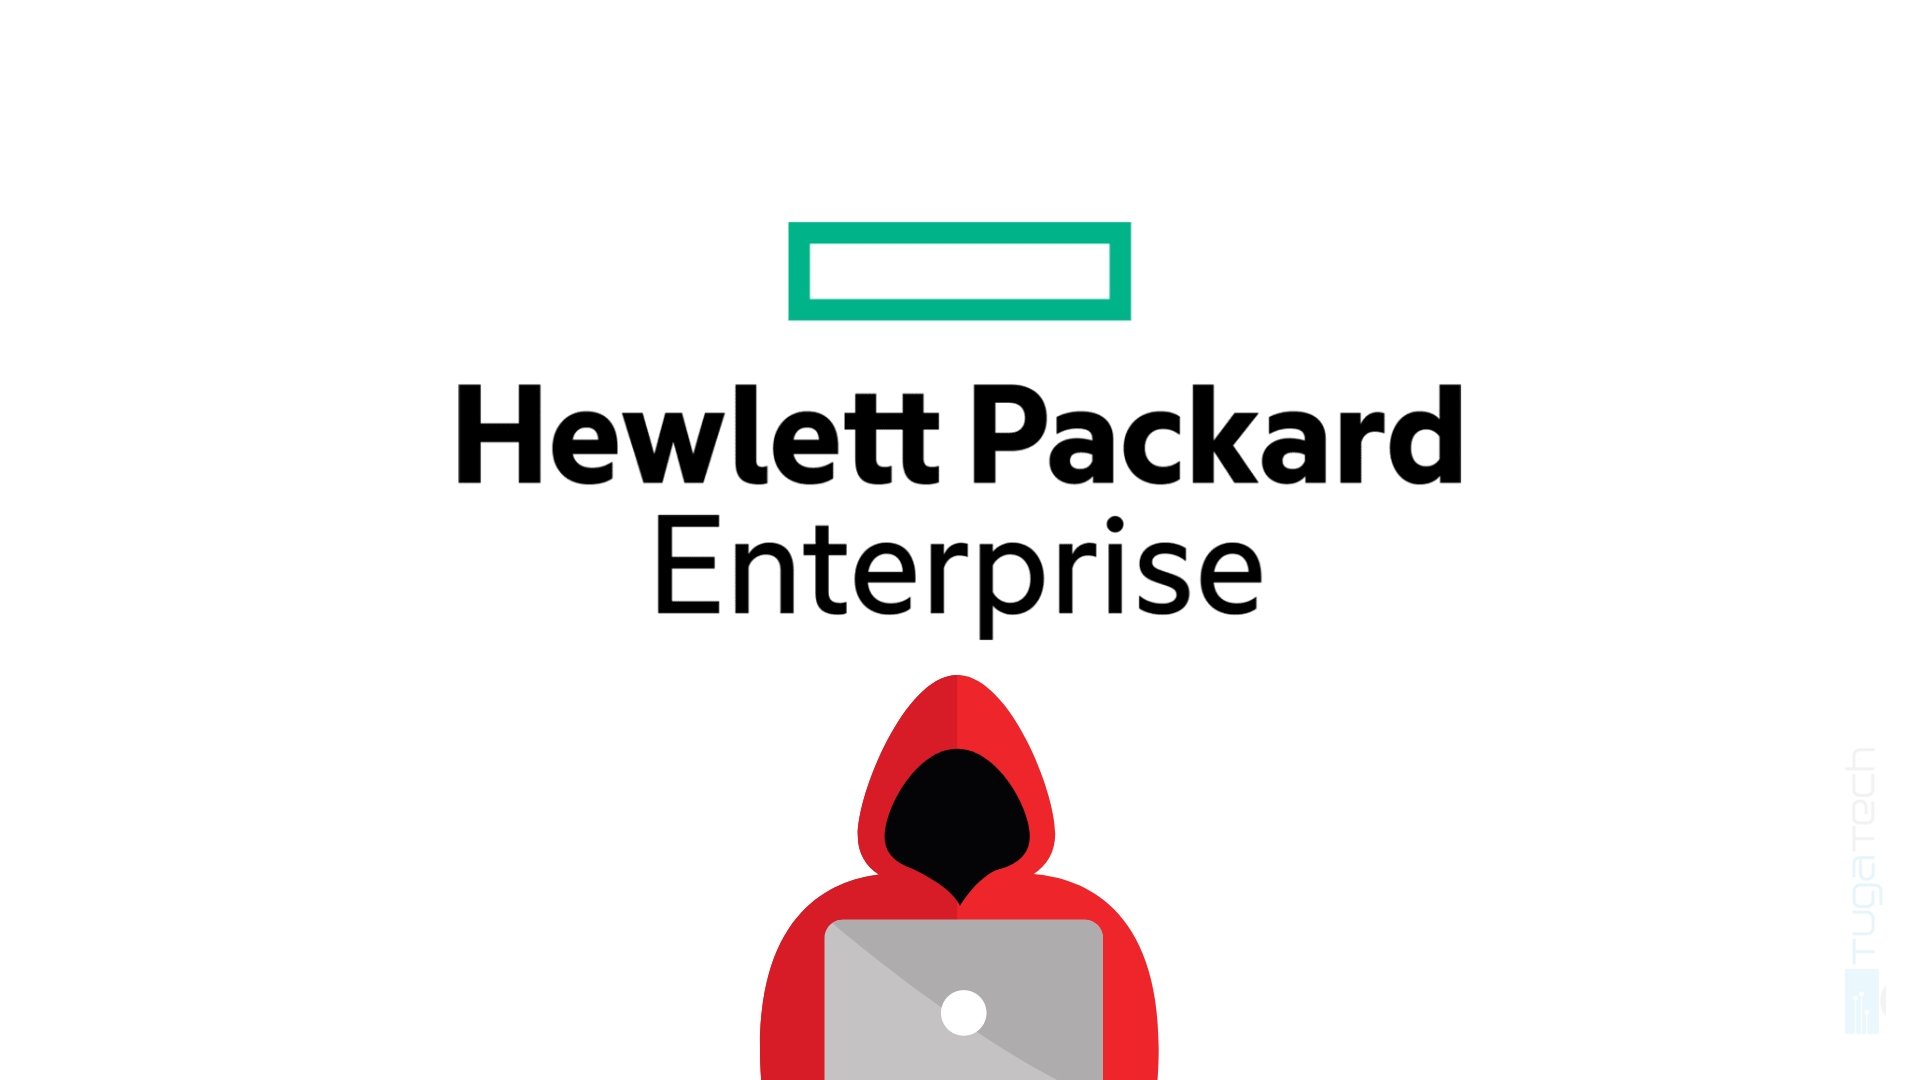 HPE hacker em imagem com logo